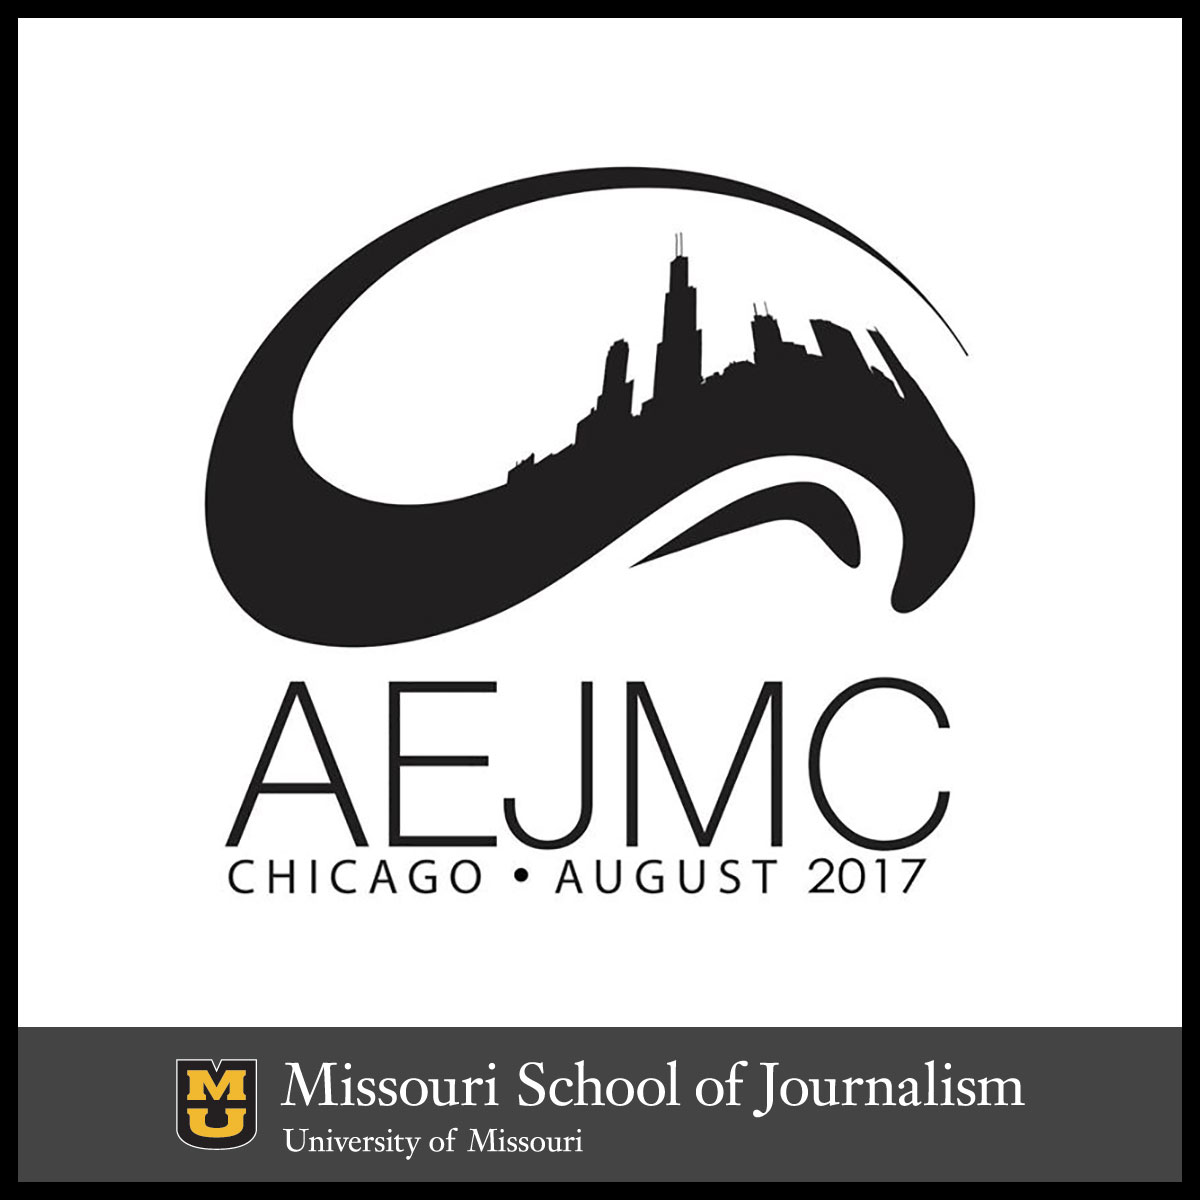 AEJMC Chicago 2017